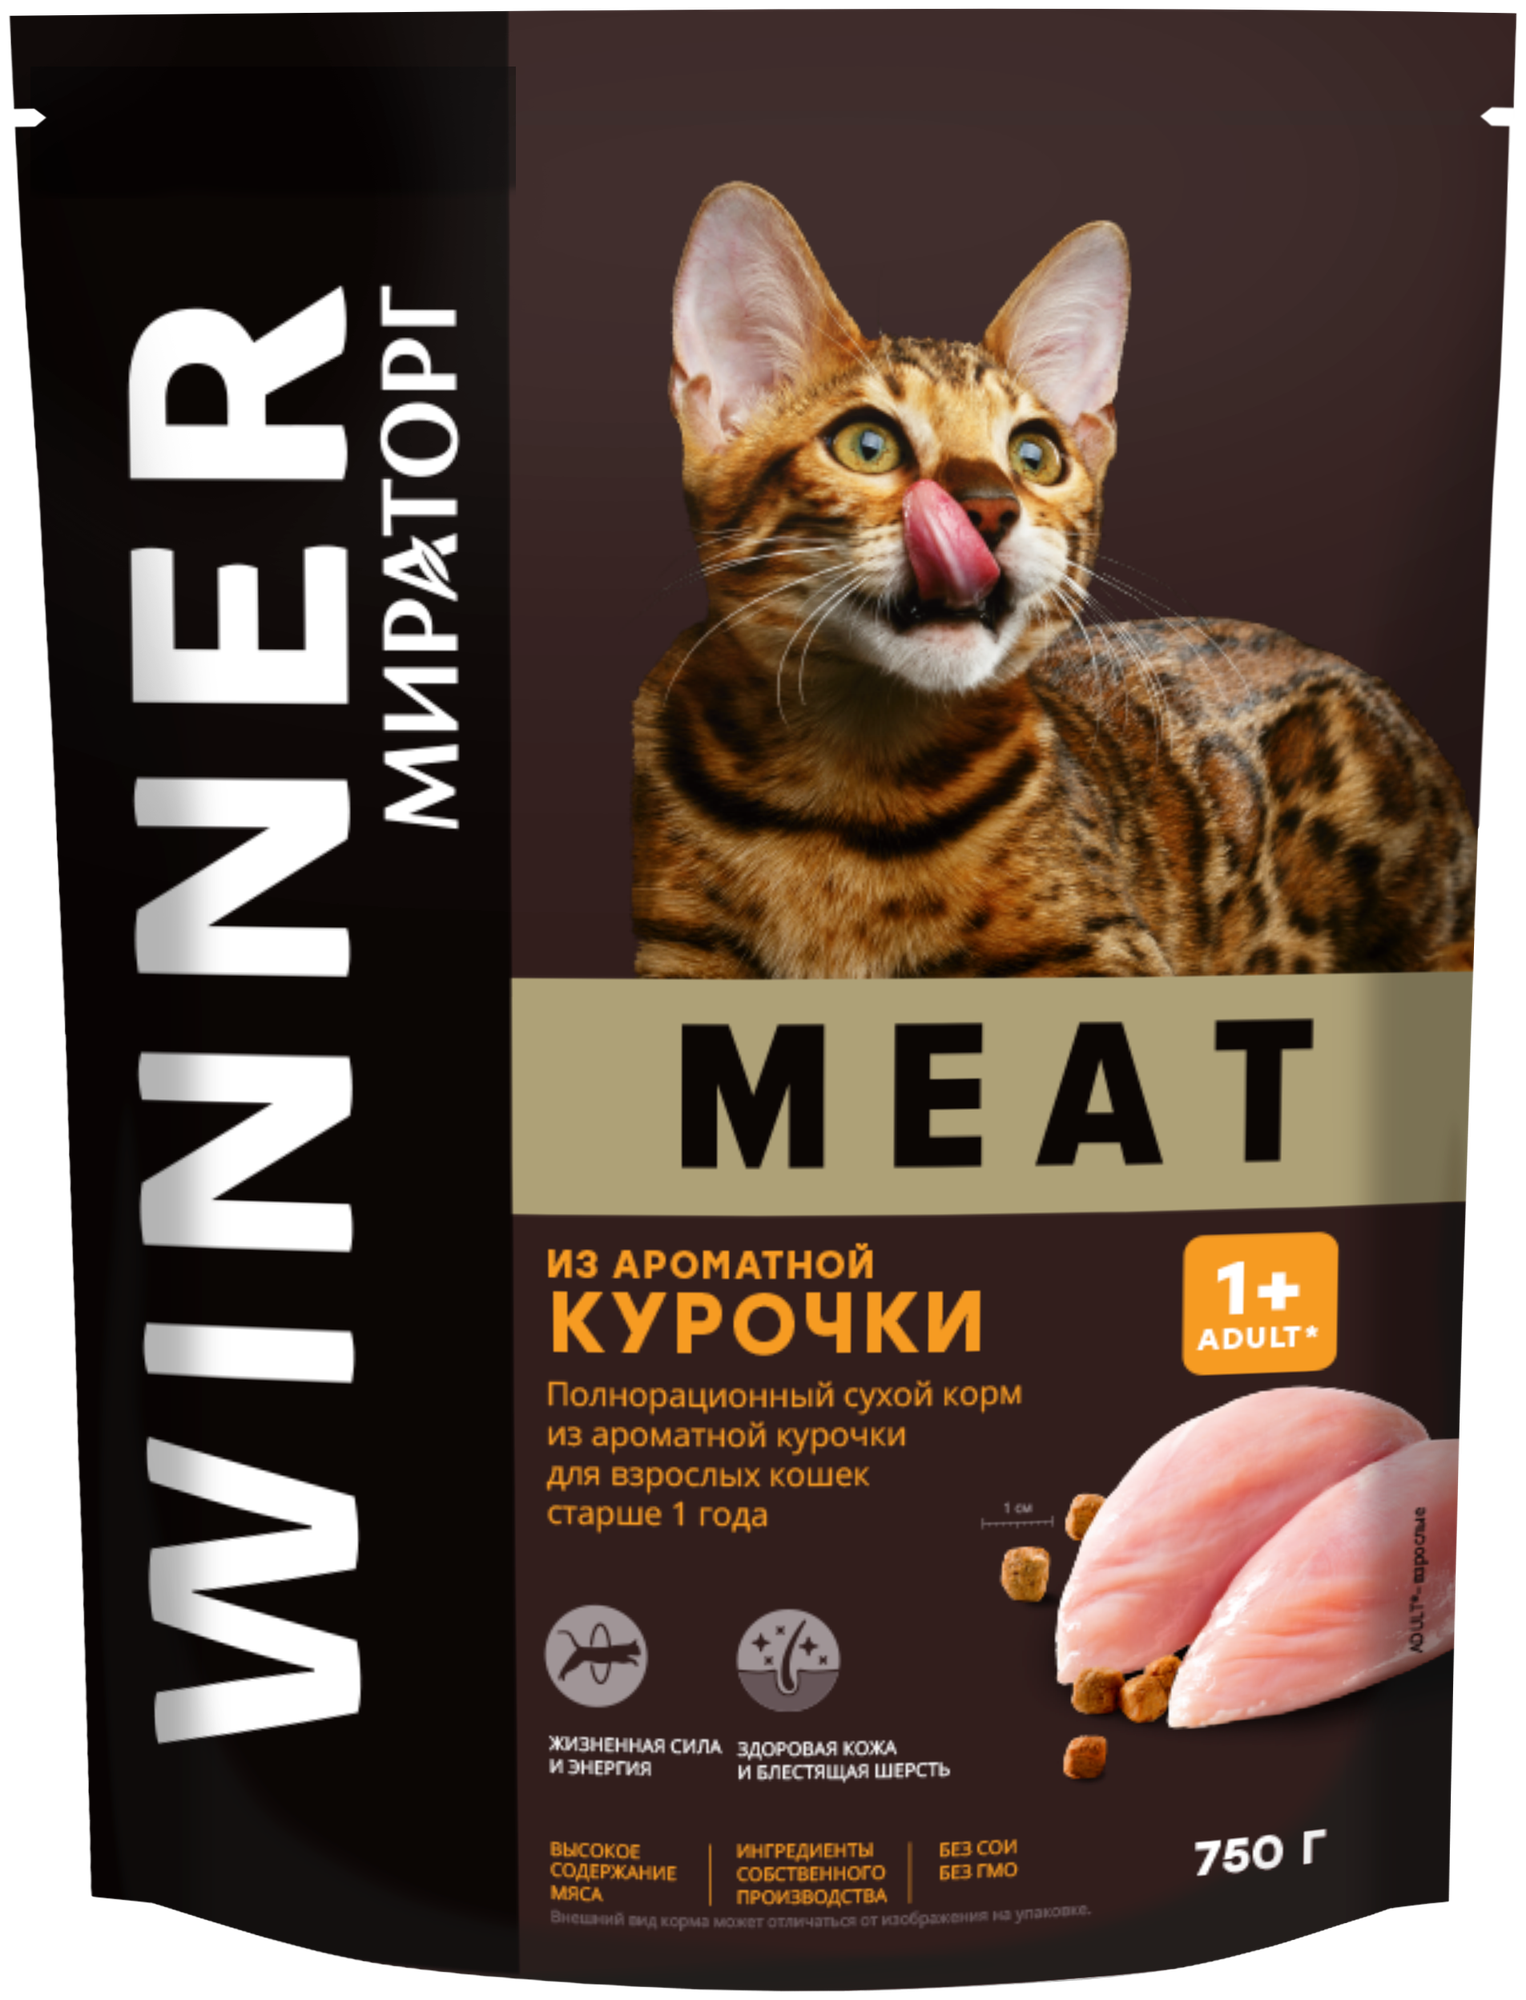 Сухой корм для кошек Мираторг MEAT, с курицей 1.5 кг — купить в интернет-магазине по низкой цене на Яндекс Маркете